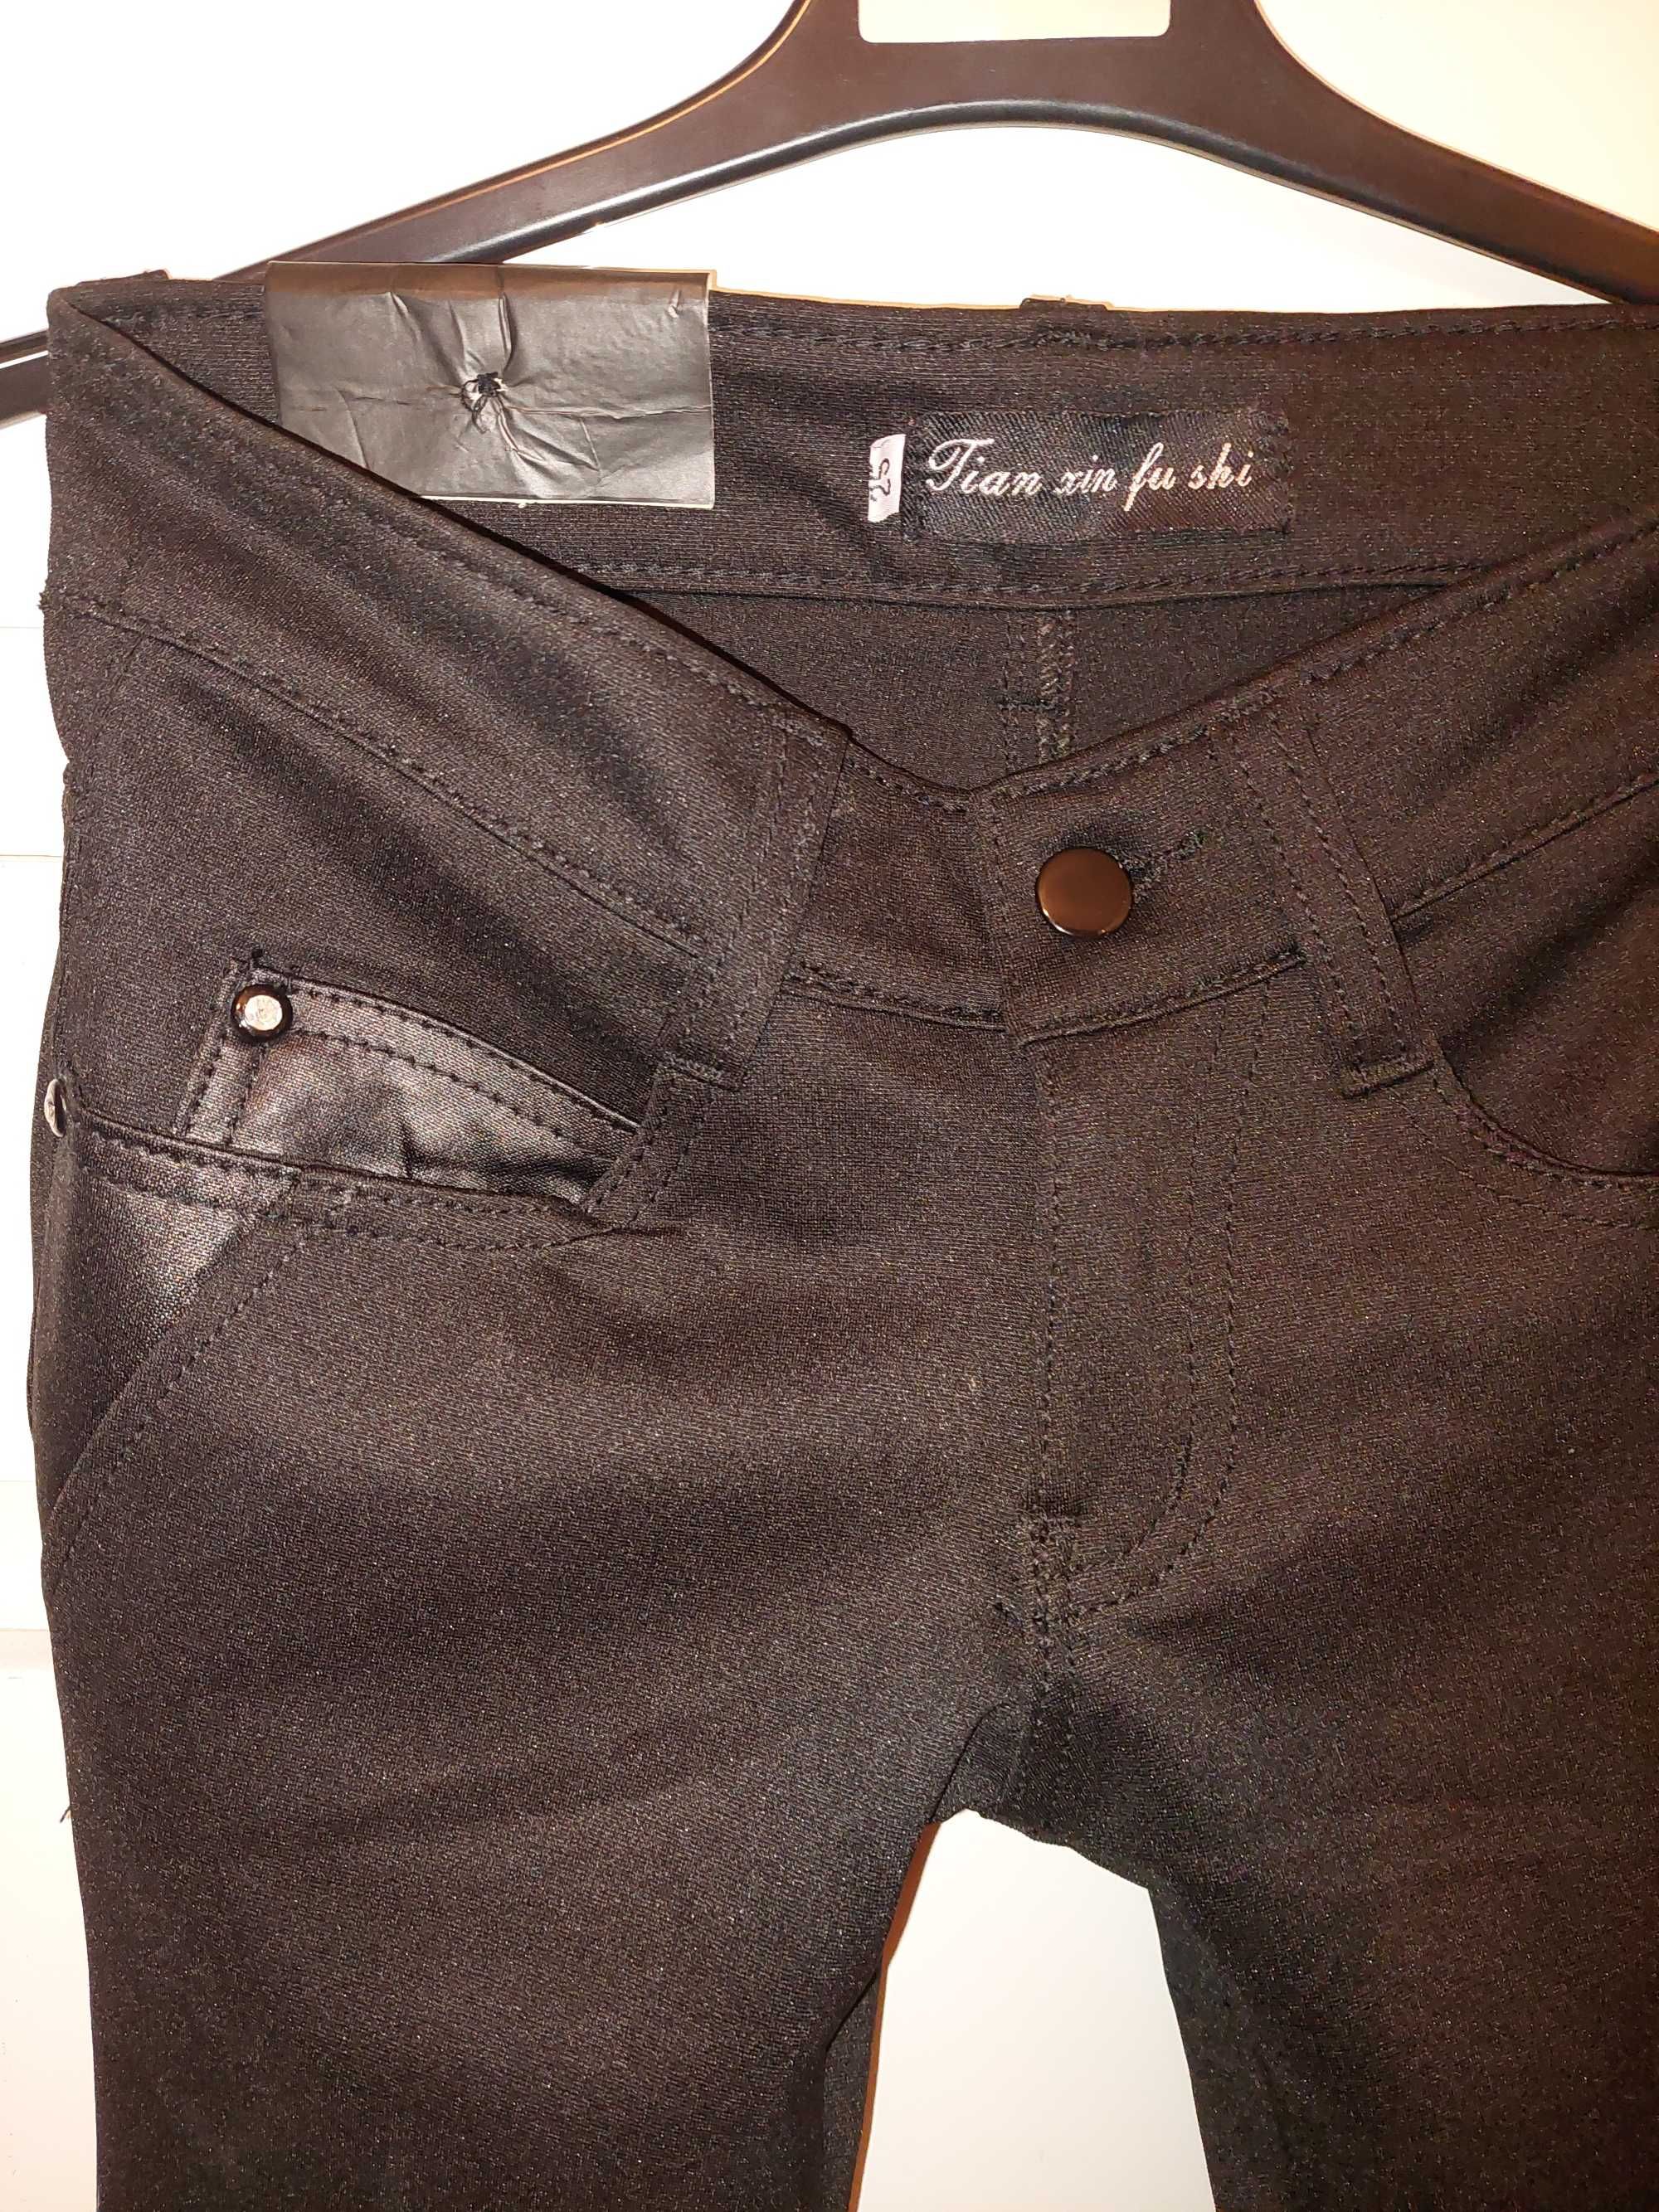 Blugi/jeans/pantaloni negri cu piele TRANSPORT GRATUIT